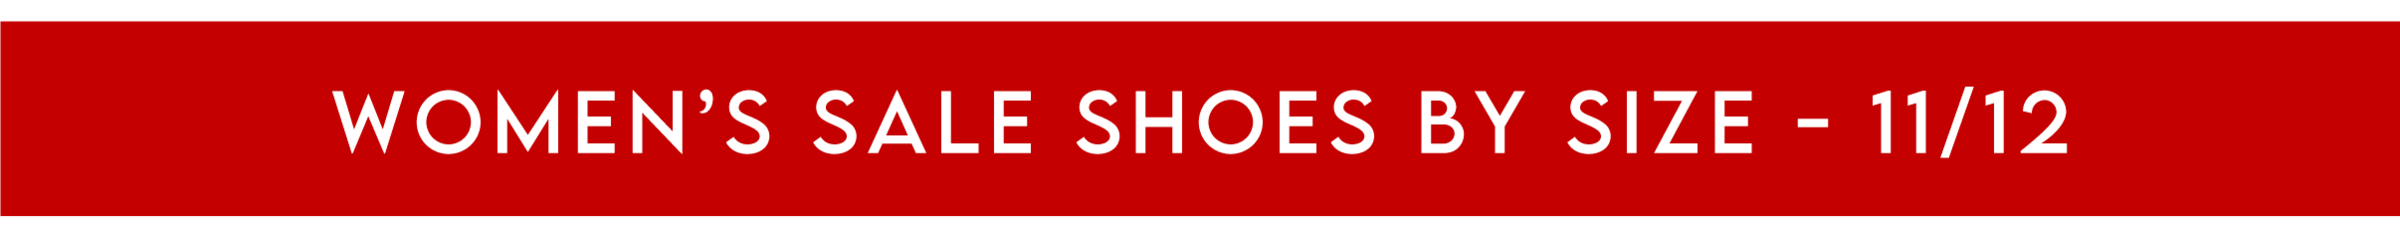 Women's Sale Shoes - Size 11/12